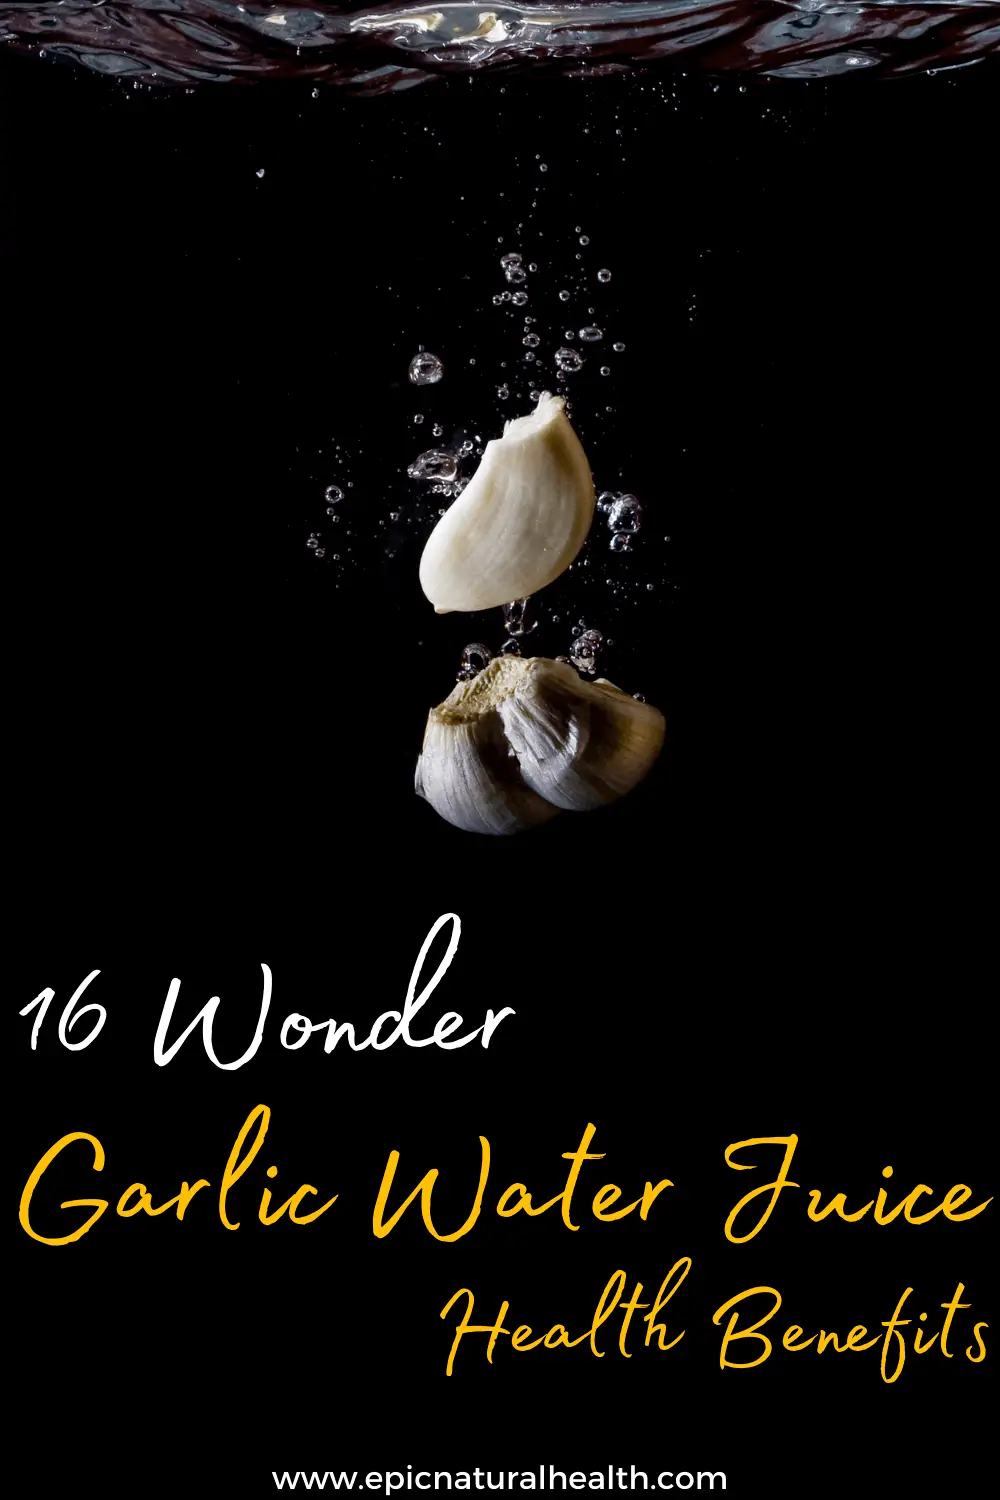 garlic water juice health benefits